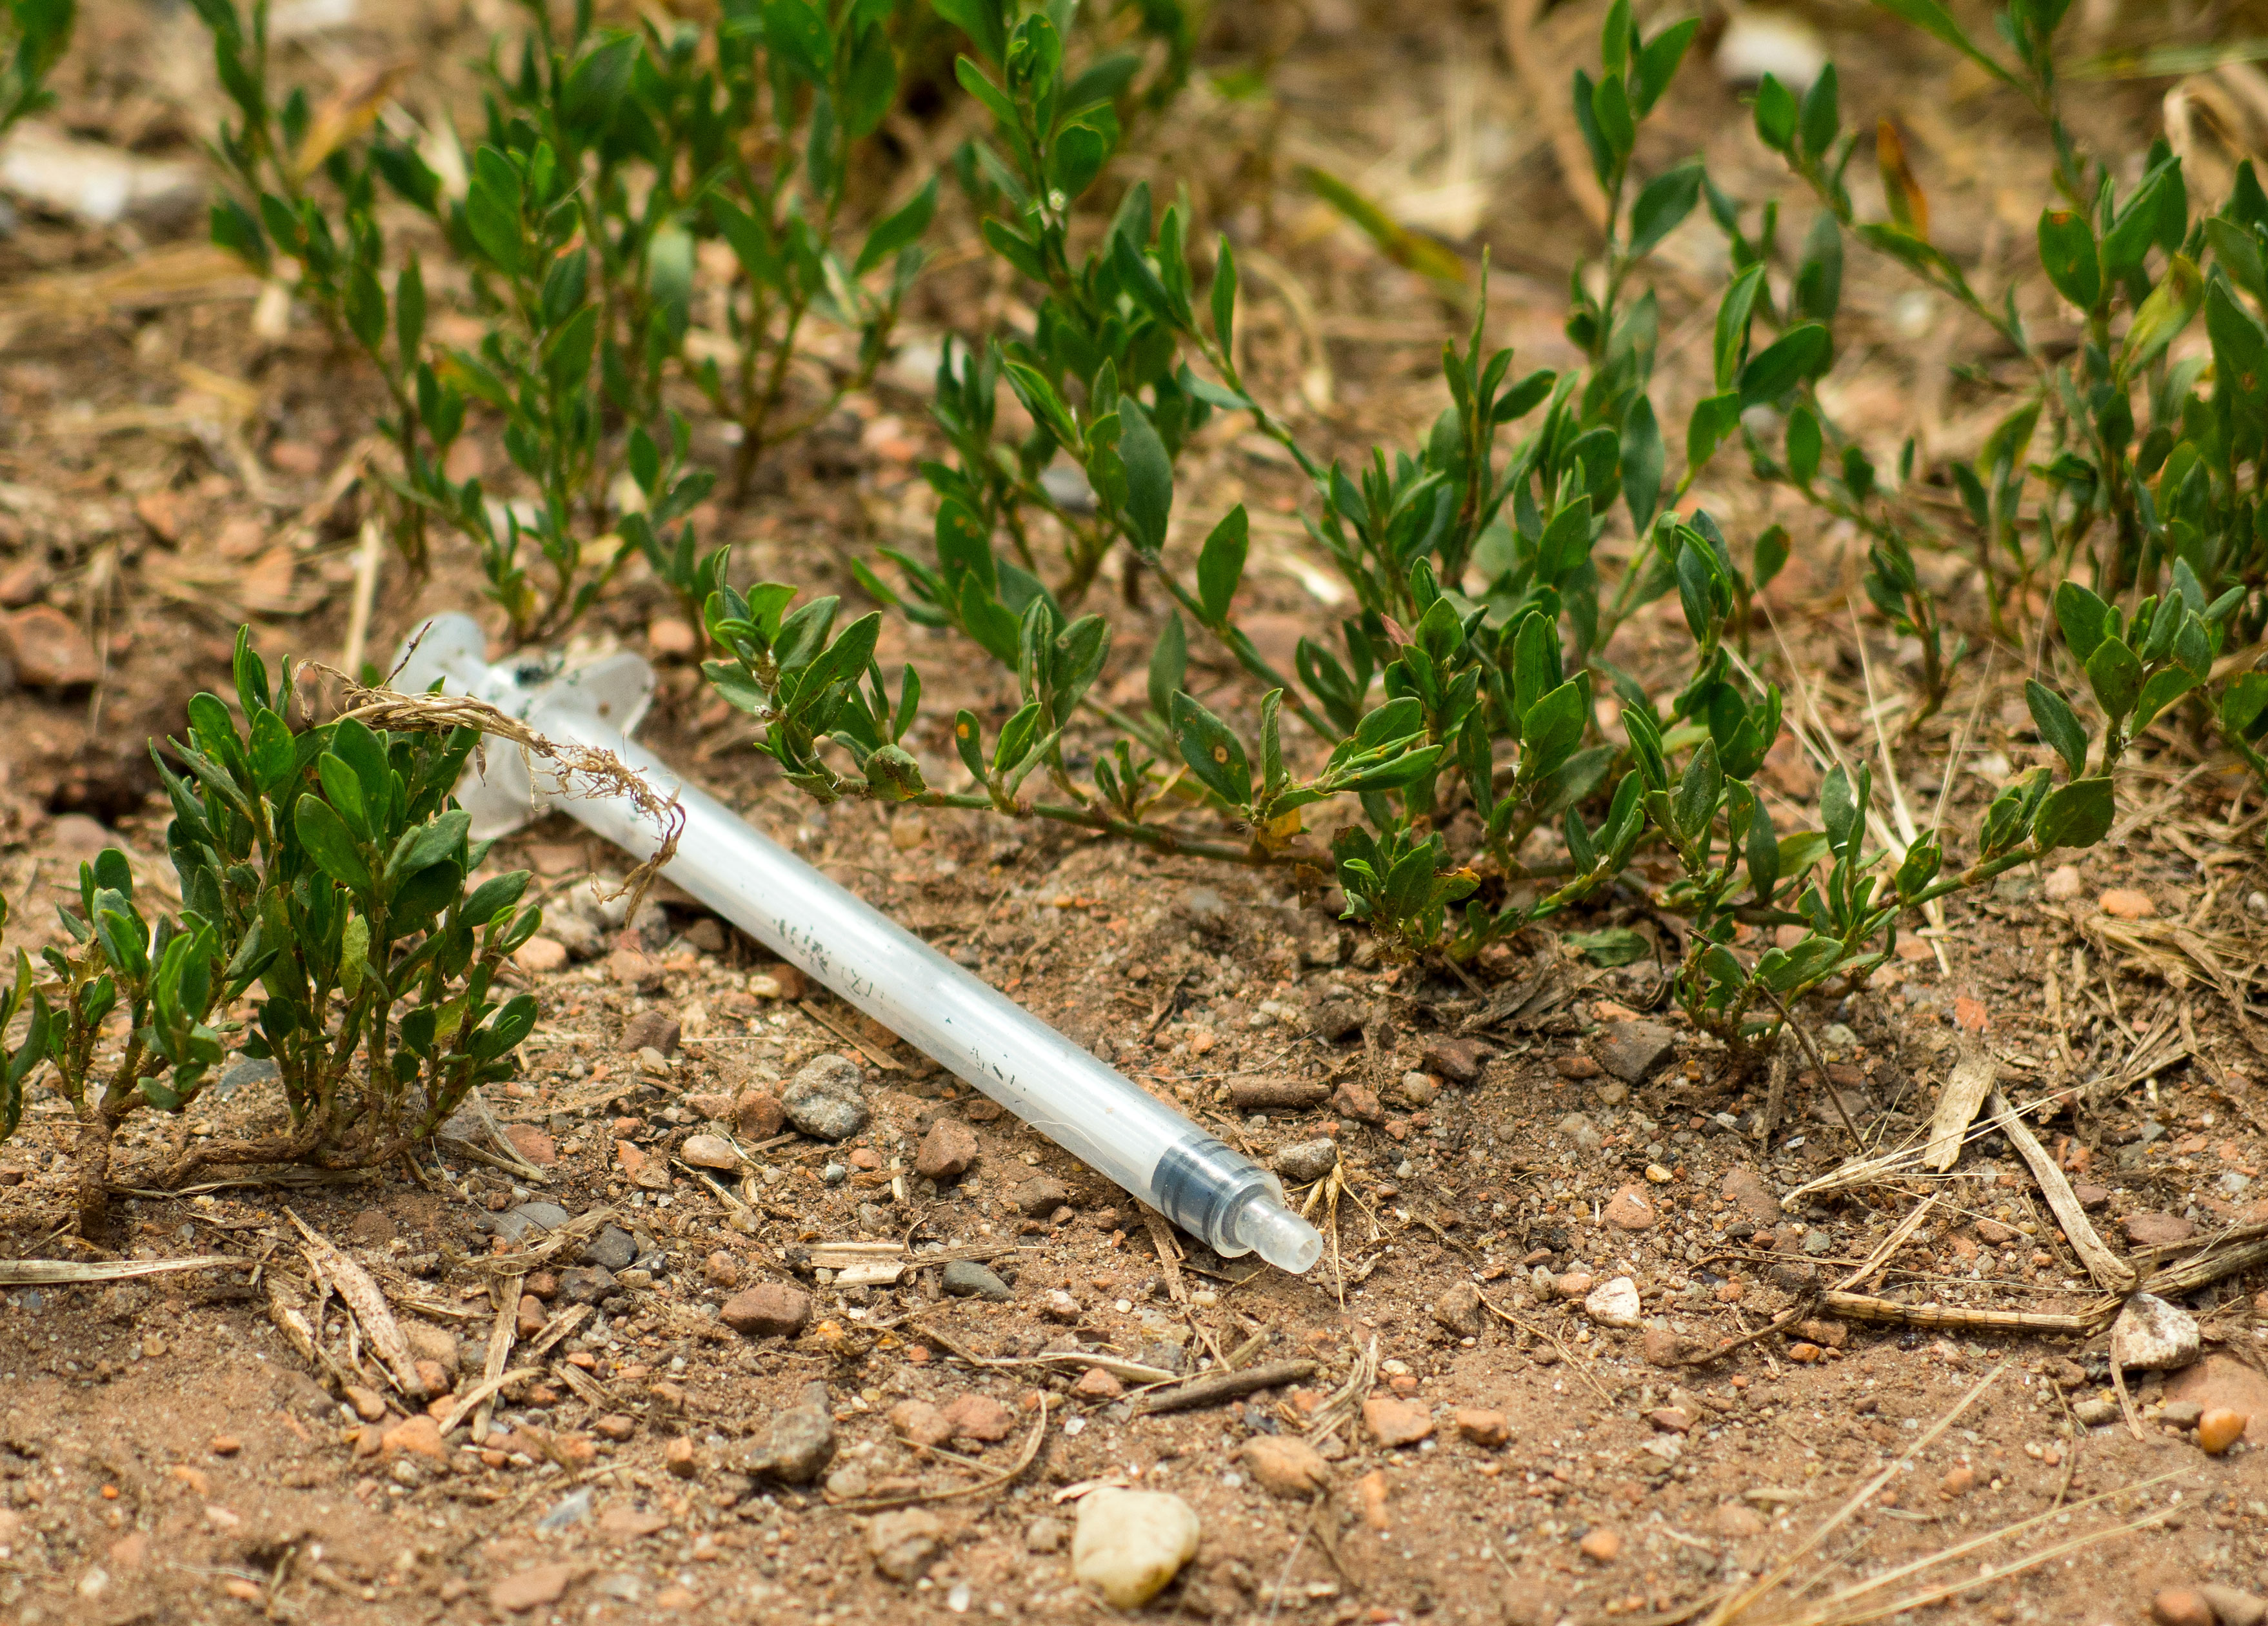 Free Image: Hypodermic Syringe On The Ground | Libreshot Public ...